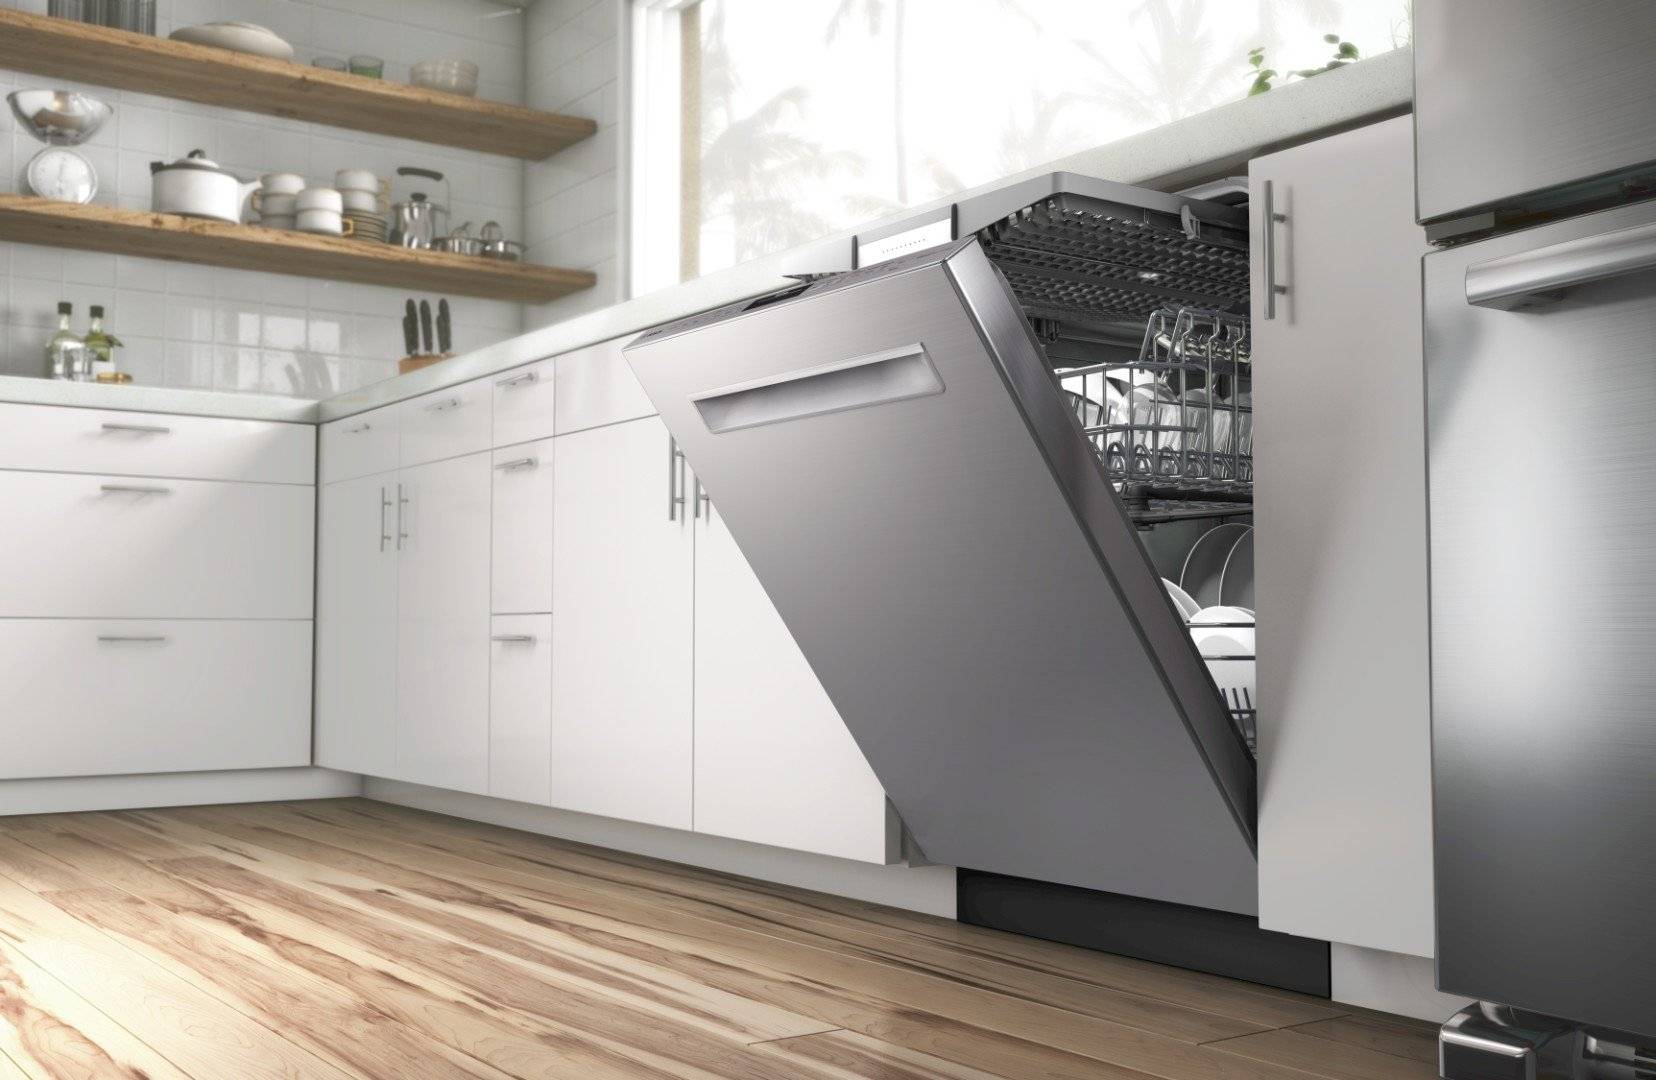 Обзор посудомоечных машин икеа (ikea) — устройство, отзывы